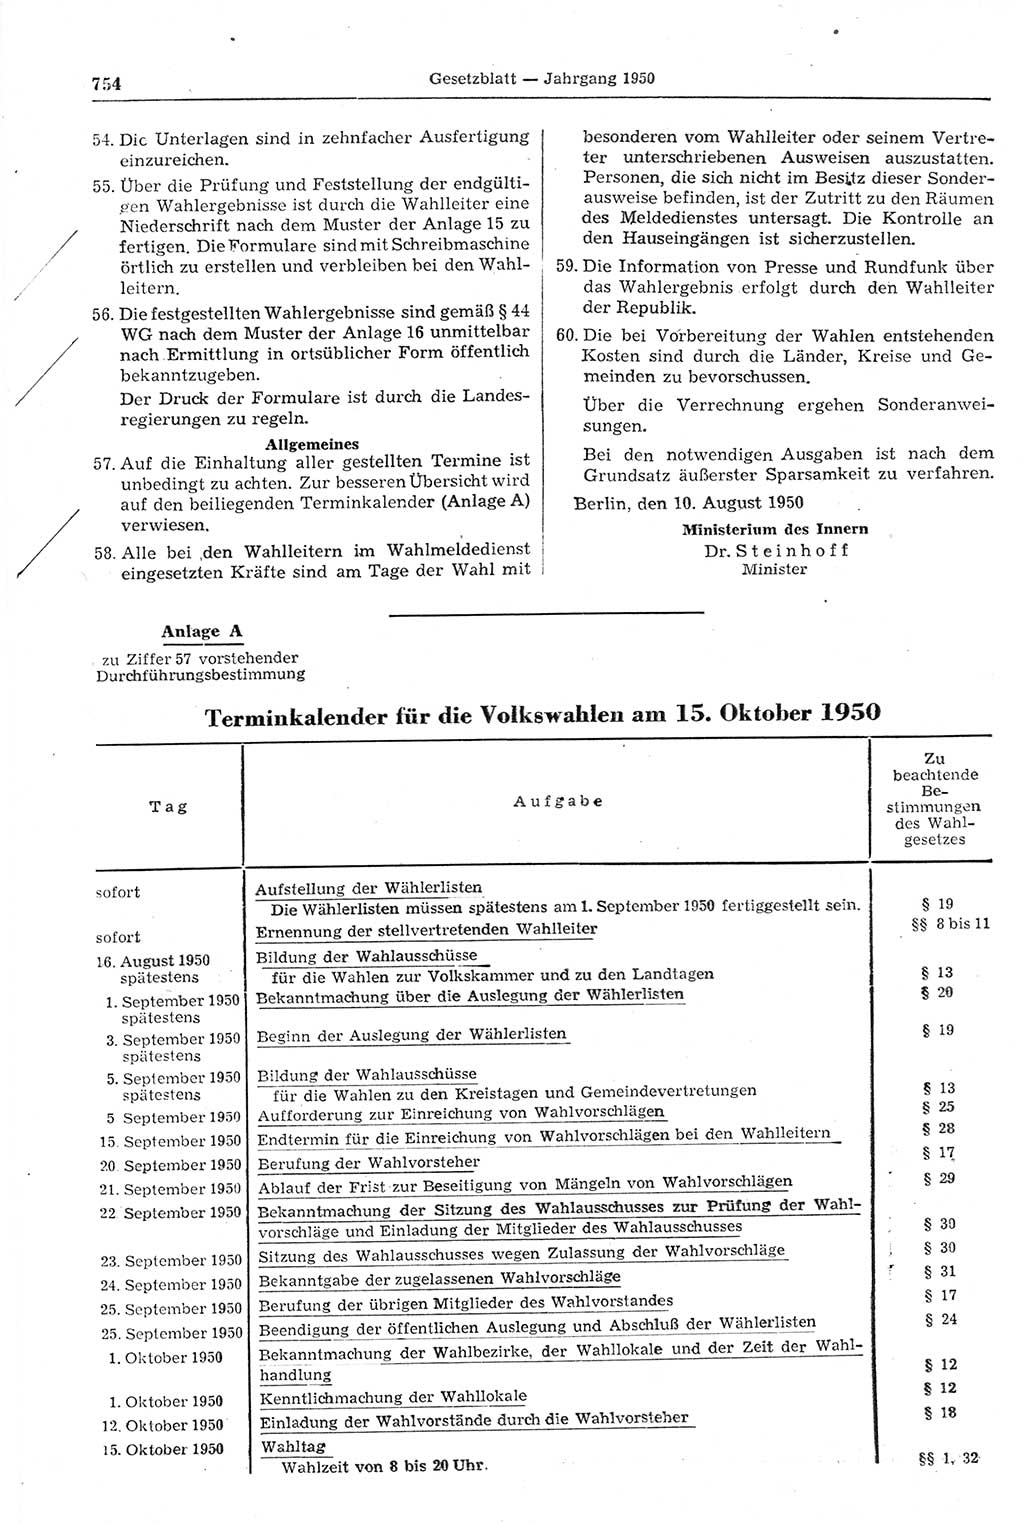 Gesetzblatt (GBl.) der Deutschen Demokratischen Republik (DDR) 1950, Seite 754 (GBl. DDR 1950, S. 754)